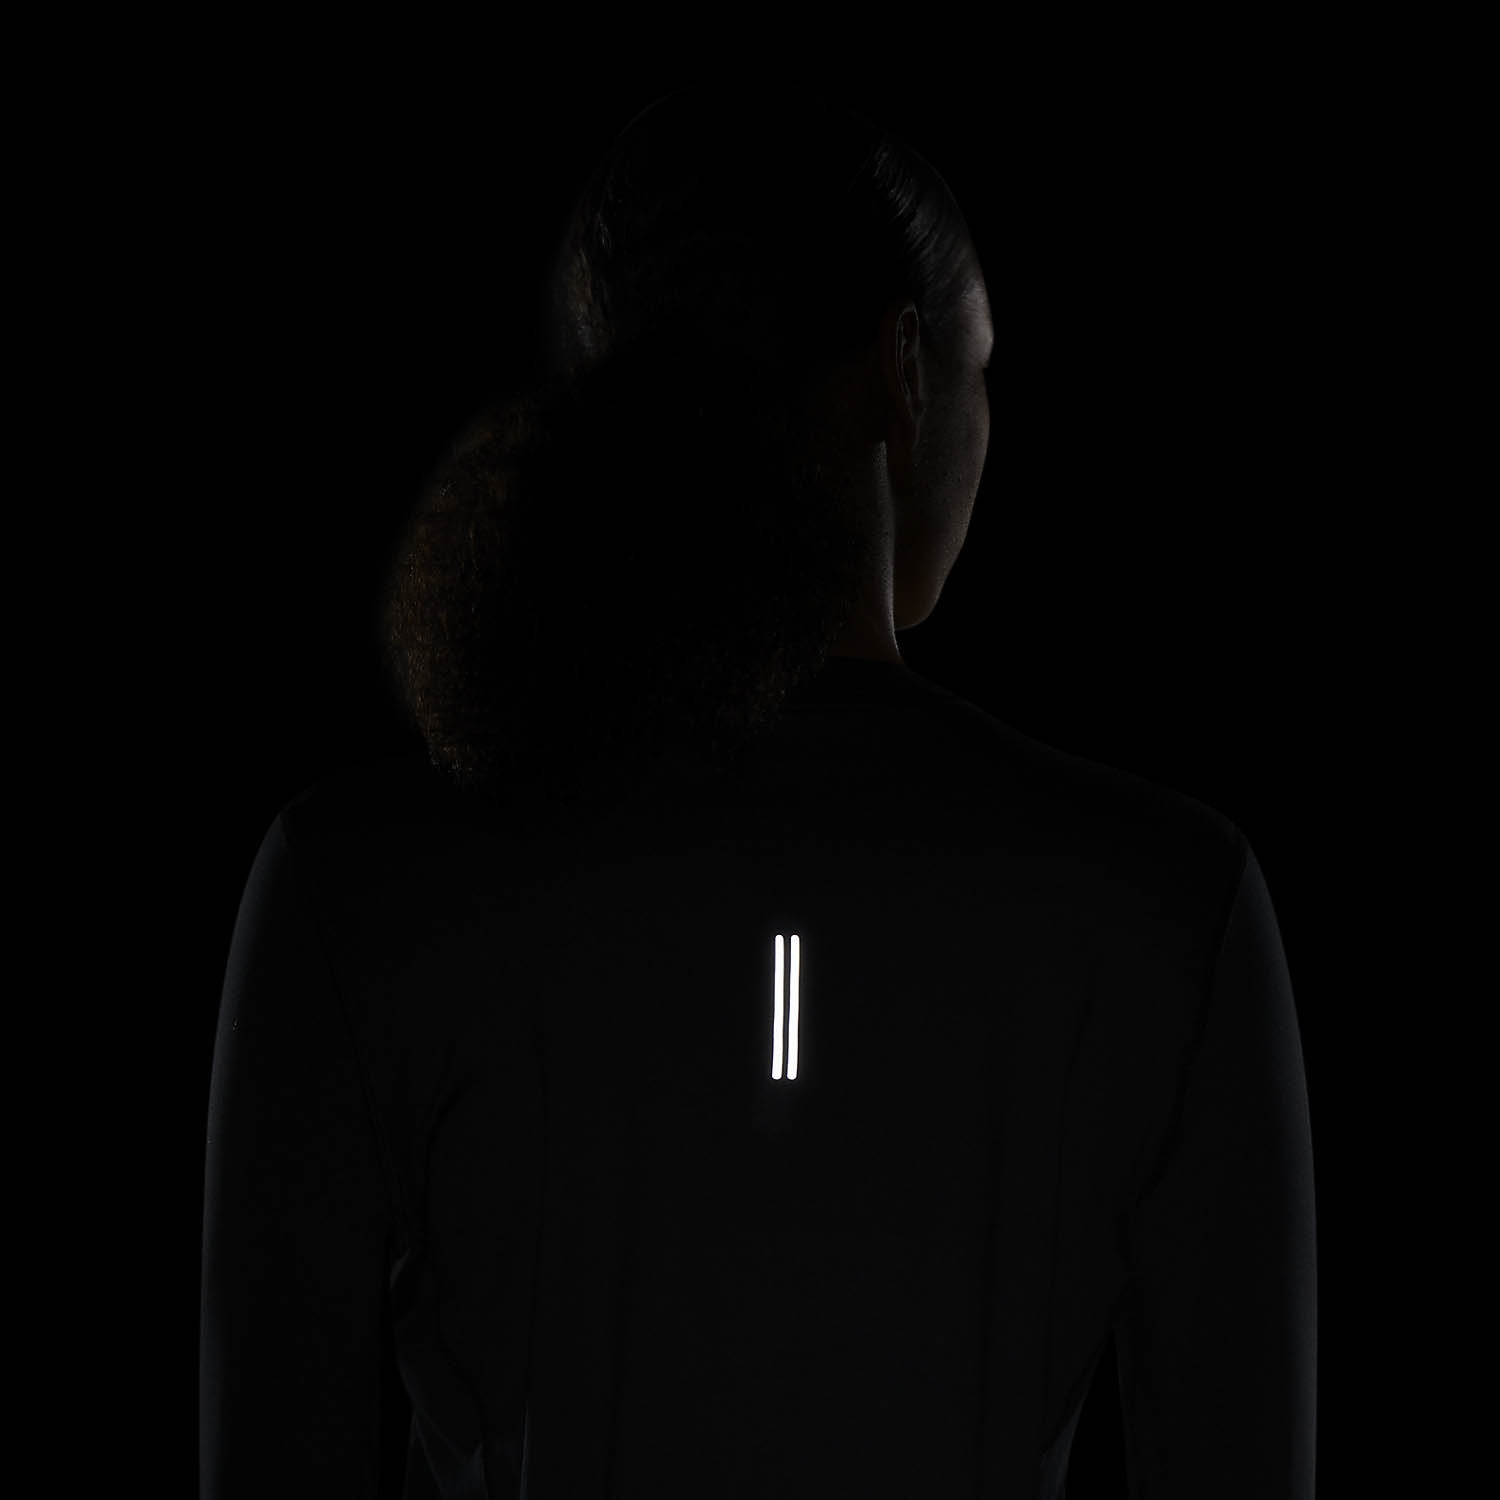 Nike Element Crew Women's Running Shirt - Black